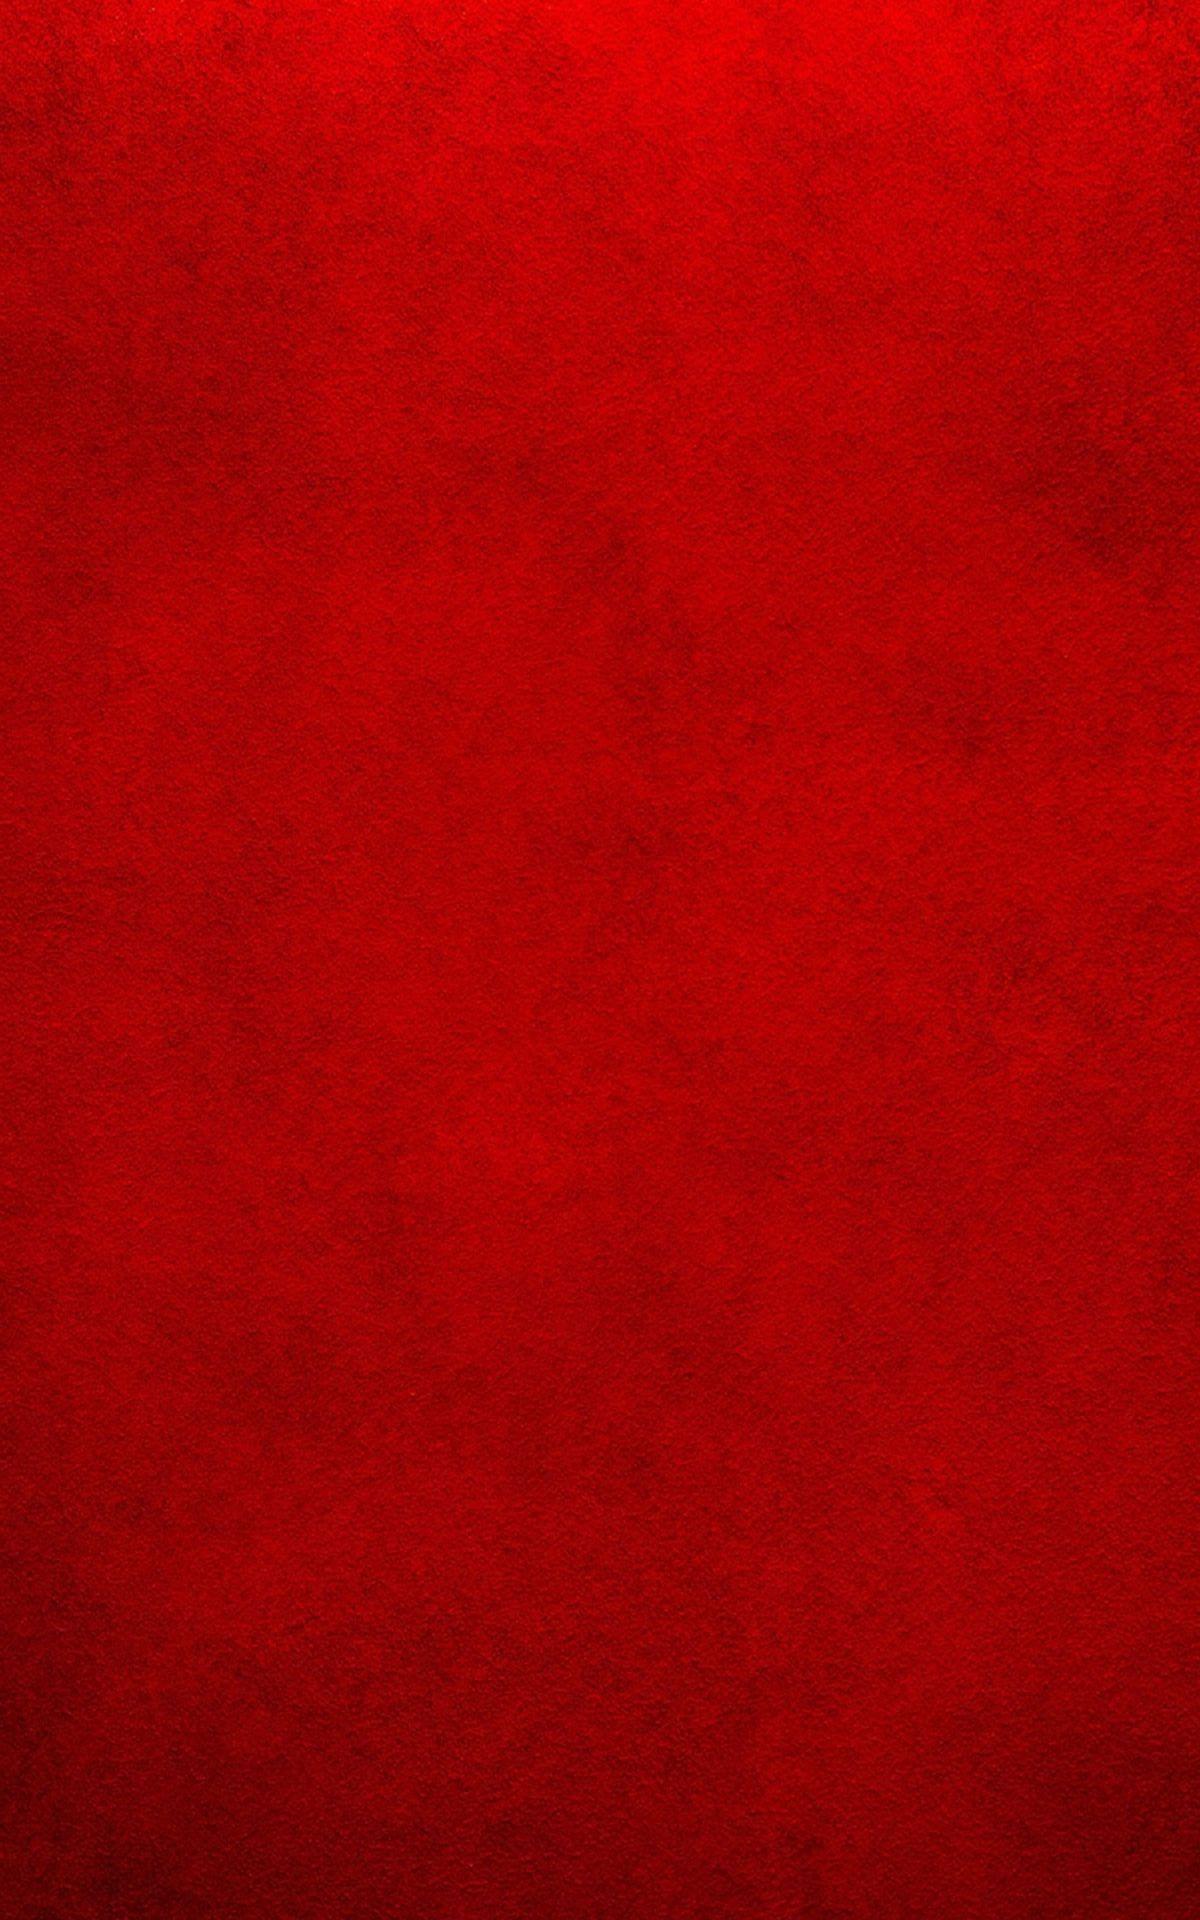 Red Wallpaper iPhone. iPhone red wallpaper, Red colour